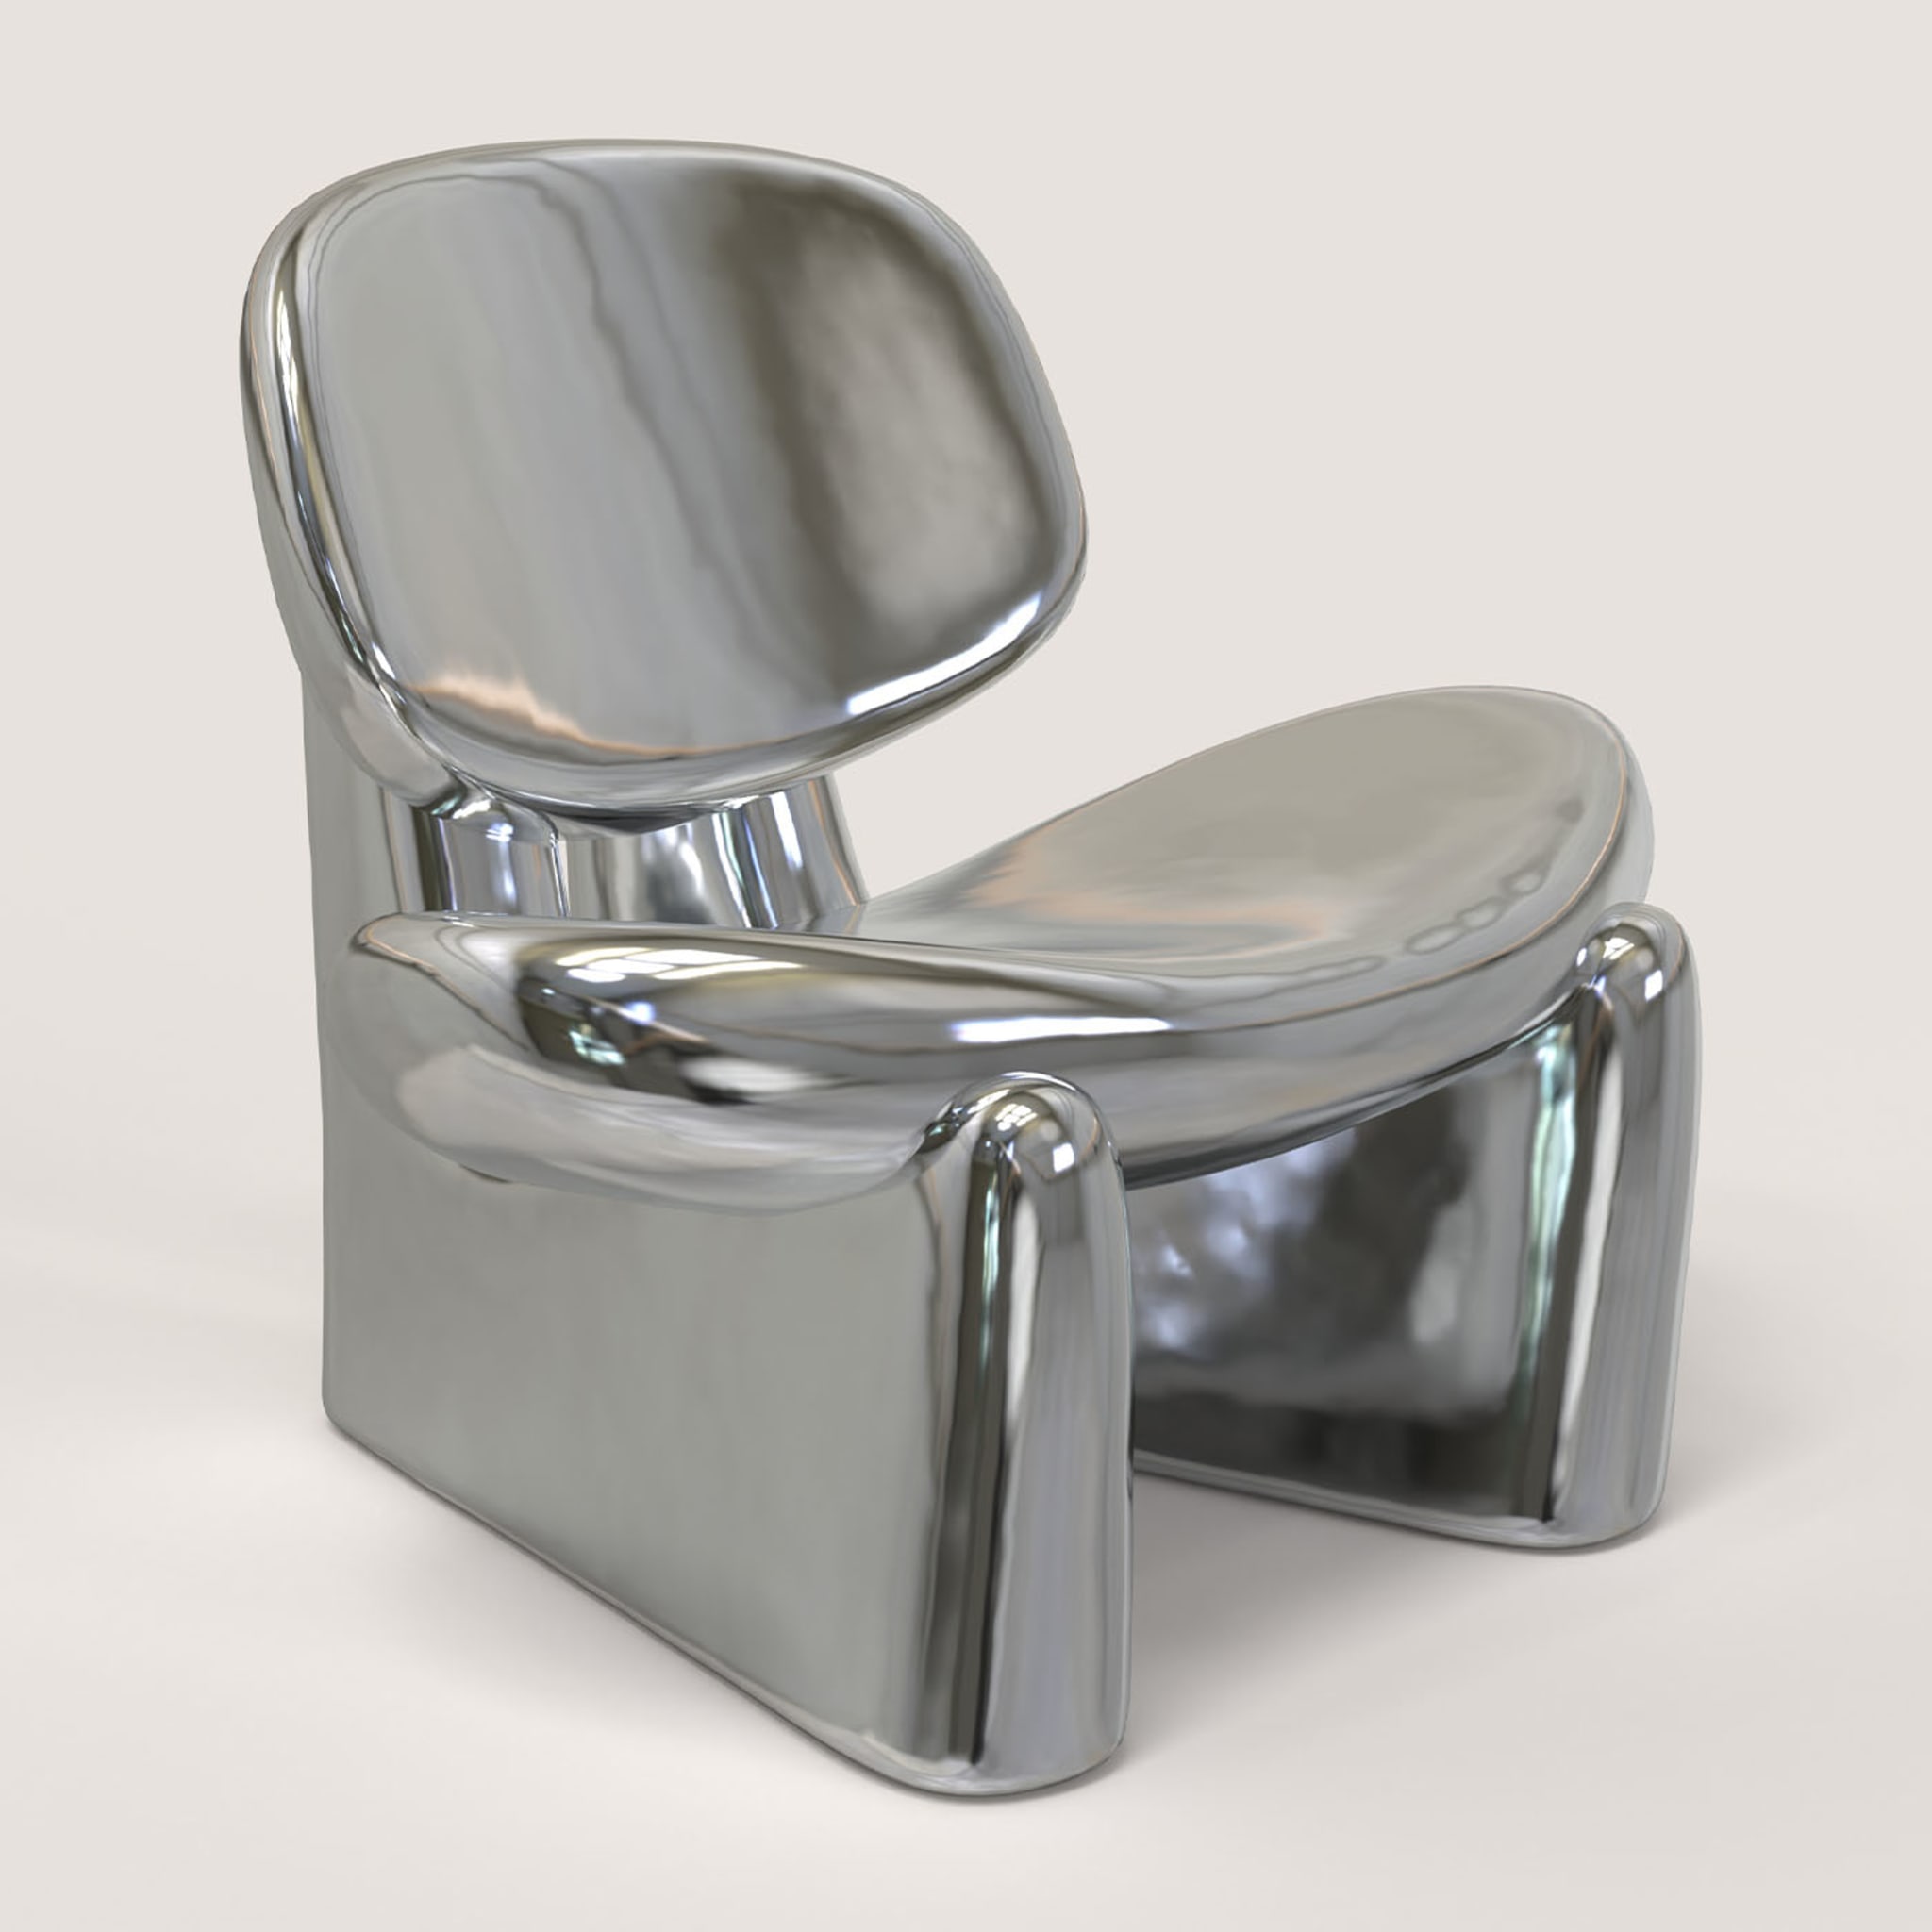 Pau V1 Silver Sculptural Chair - Alternative view 5